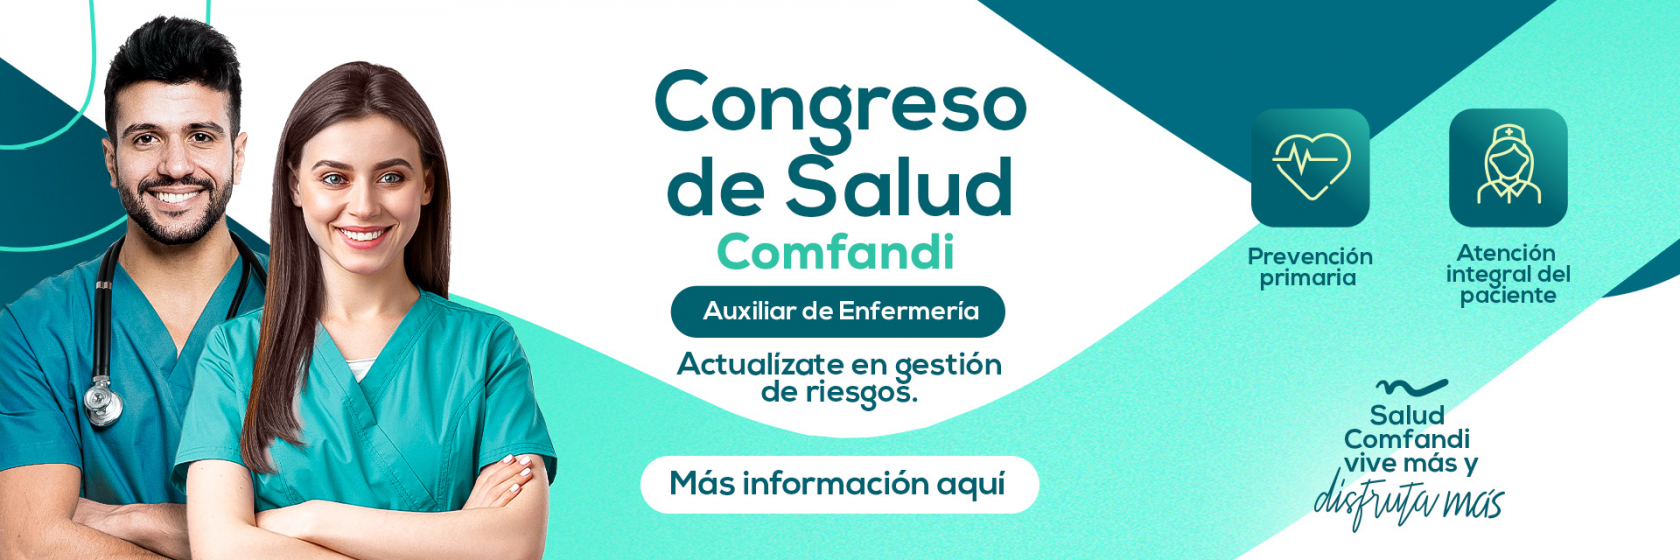 Banner Congreso Enfermeria